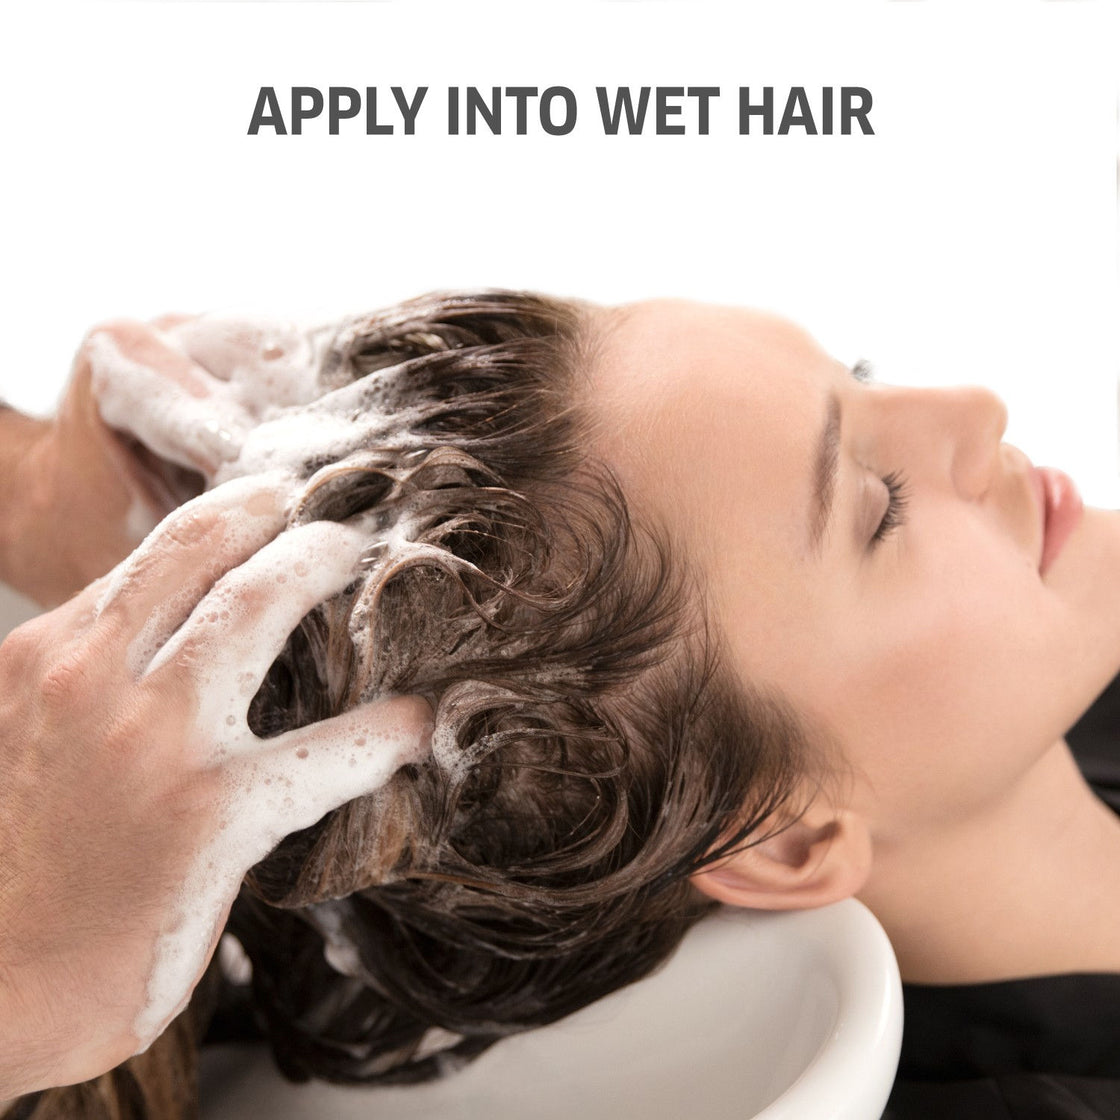 Wella Professionals INVIGO Volume Boost Bodifying Shampoo (250ml)